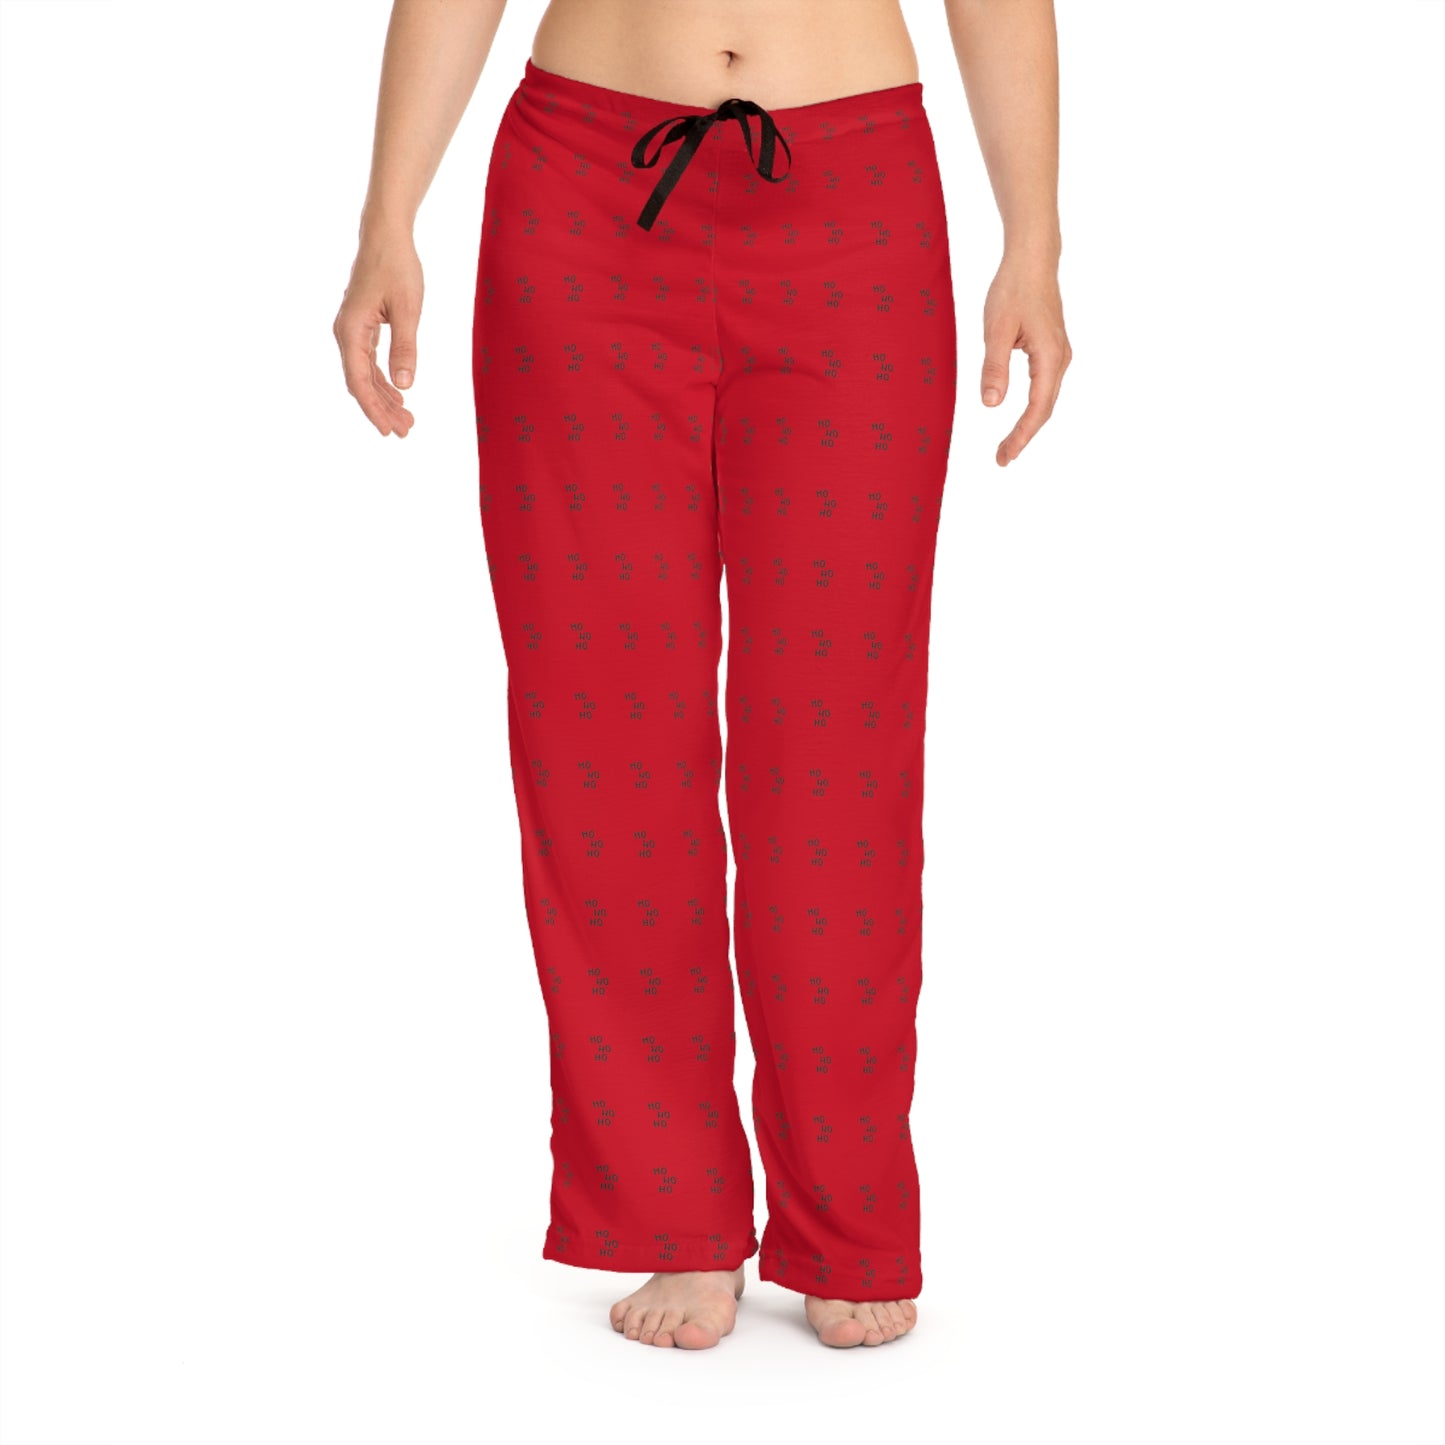 Ho Ho Ho Bottoms Women's Pajama Pants